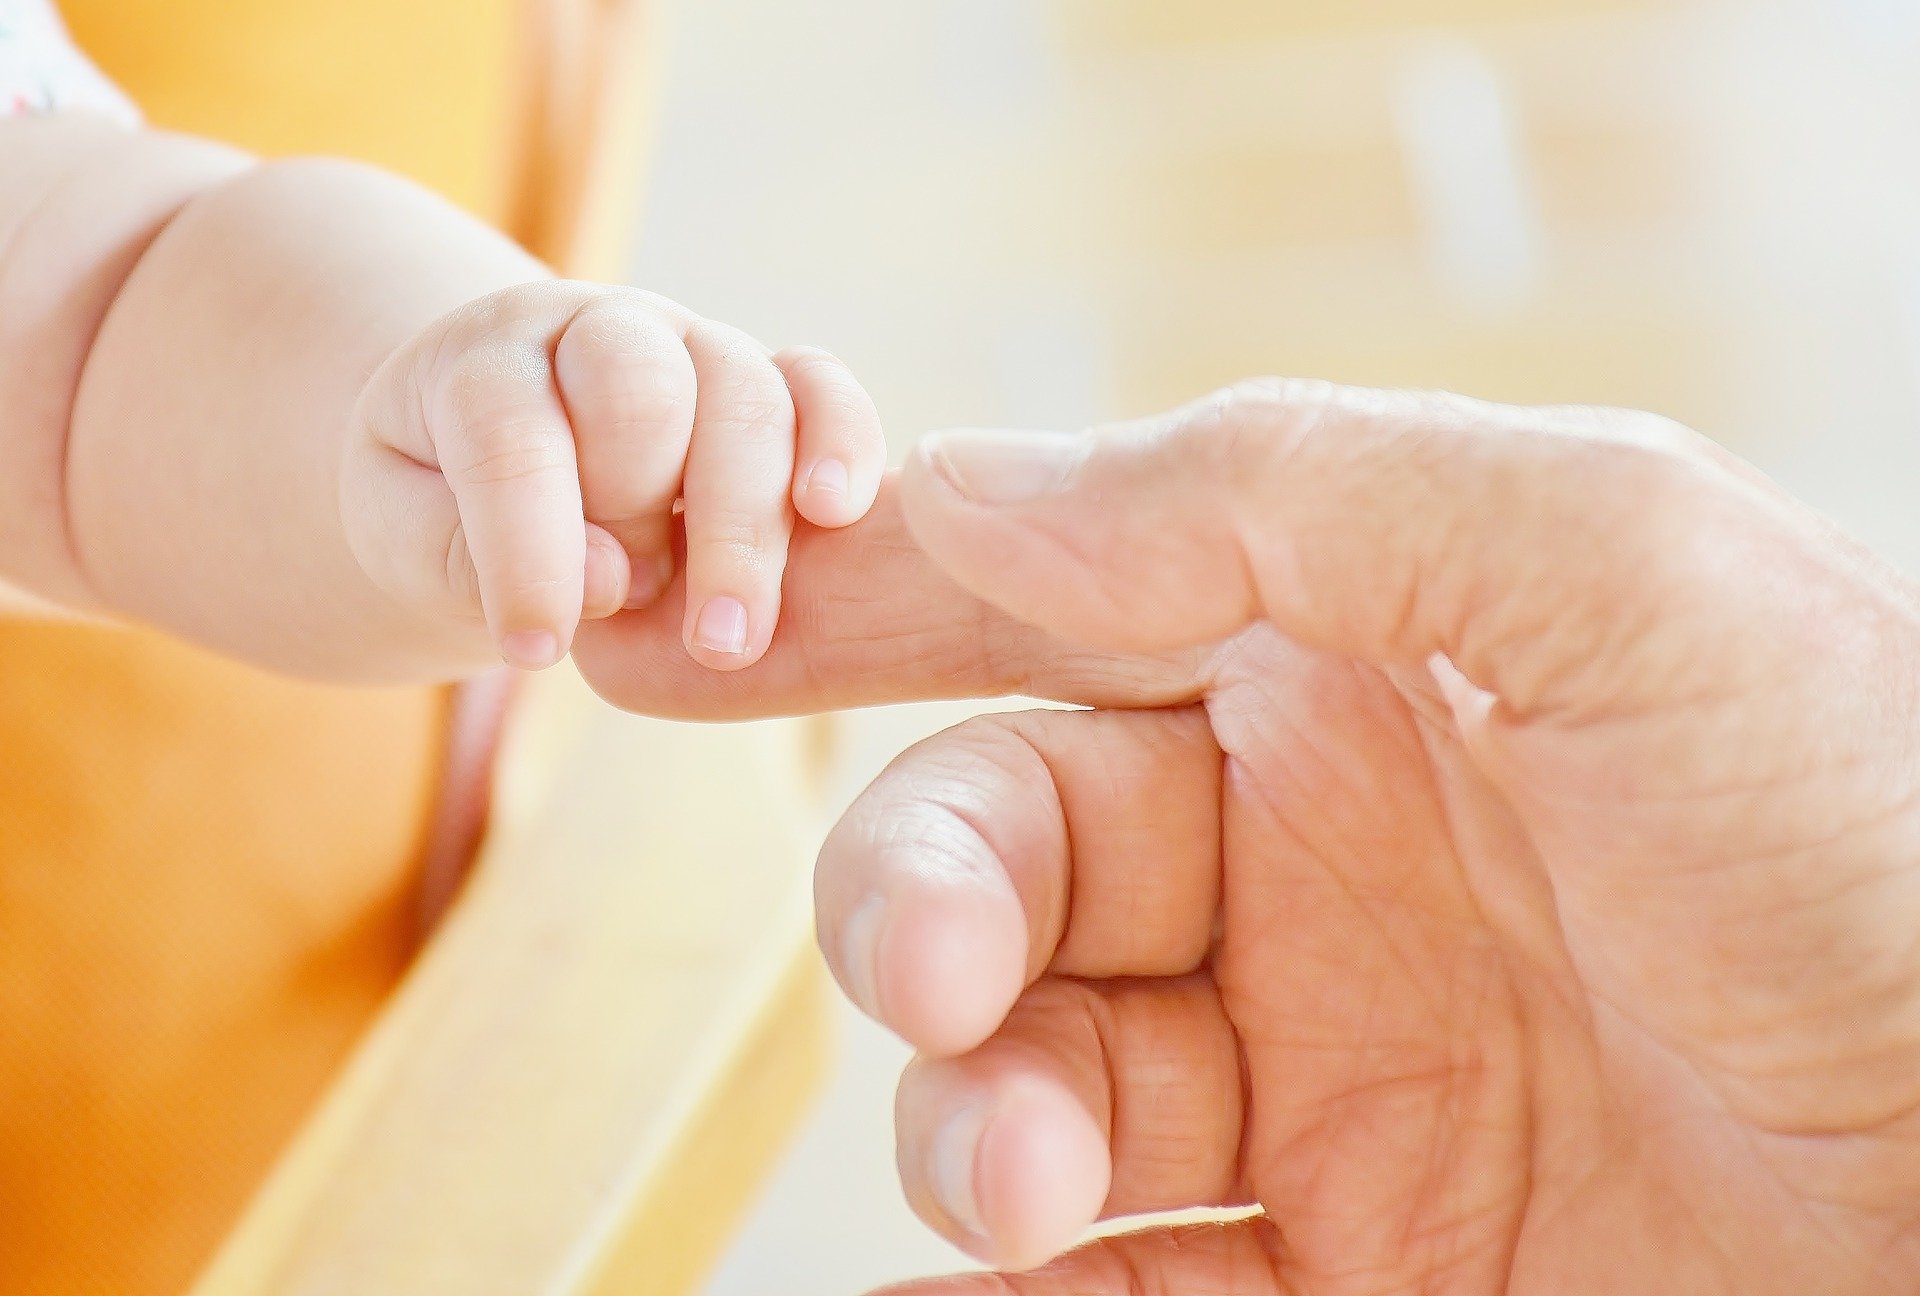 طول أصابع الطفل يشير إلى مستوى معيشة الأم - تغيرات قابلة للقياس في طول أصابع النسل تحدد الحالة المعيشية للأم - الهرمونات لدى النساء أثناء الحمل